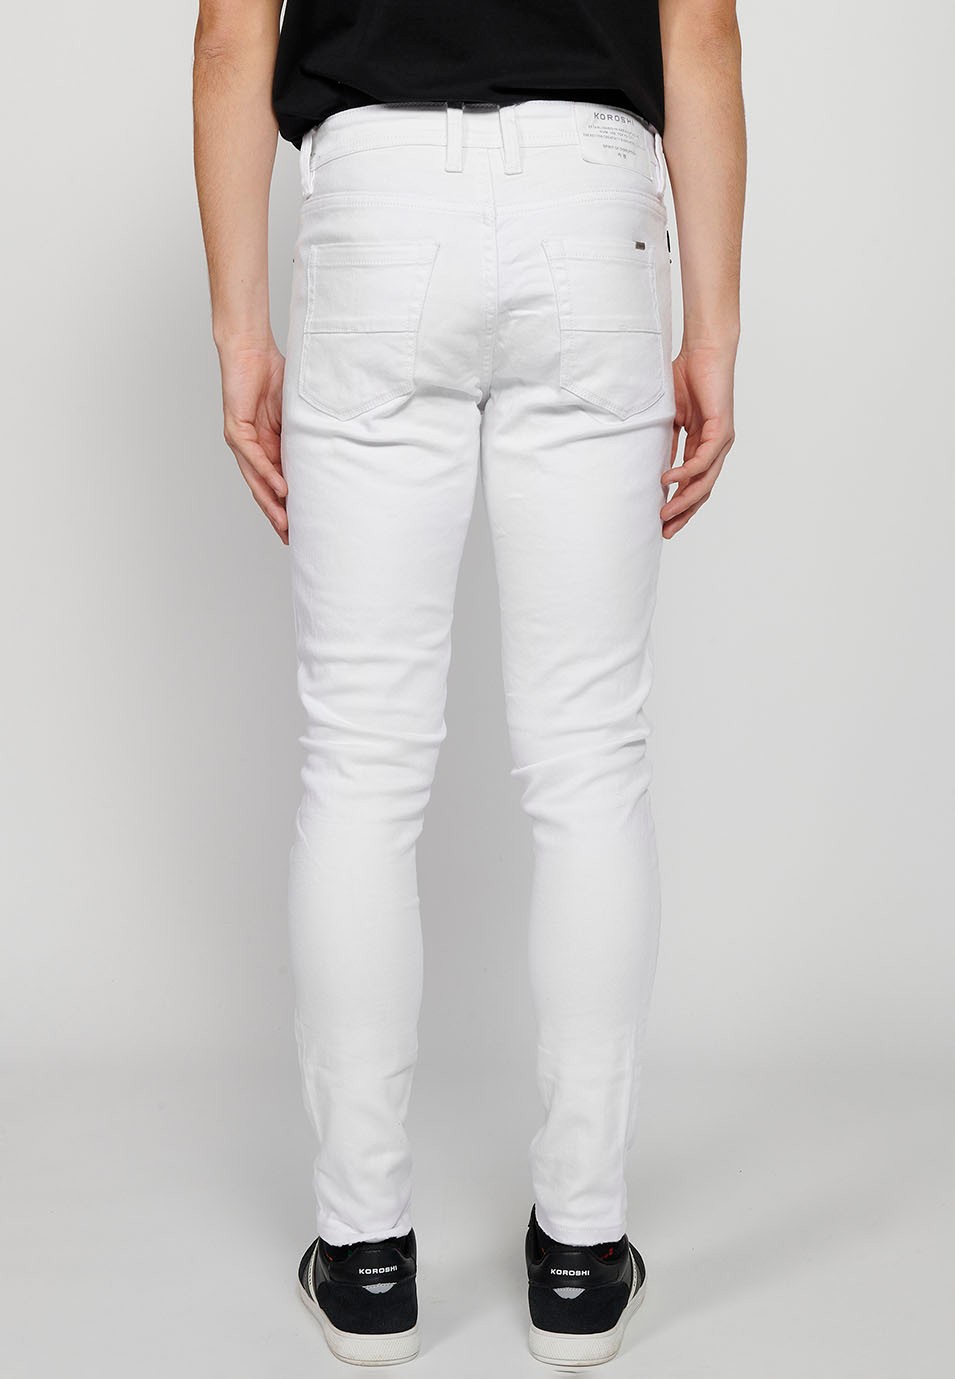 Pantalons jeans super skinny amb Tancament davanter amb cremallera i botó de Color Denim Blanc per a Home 5